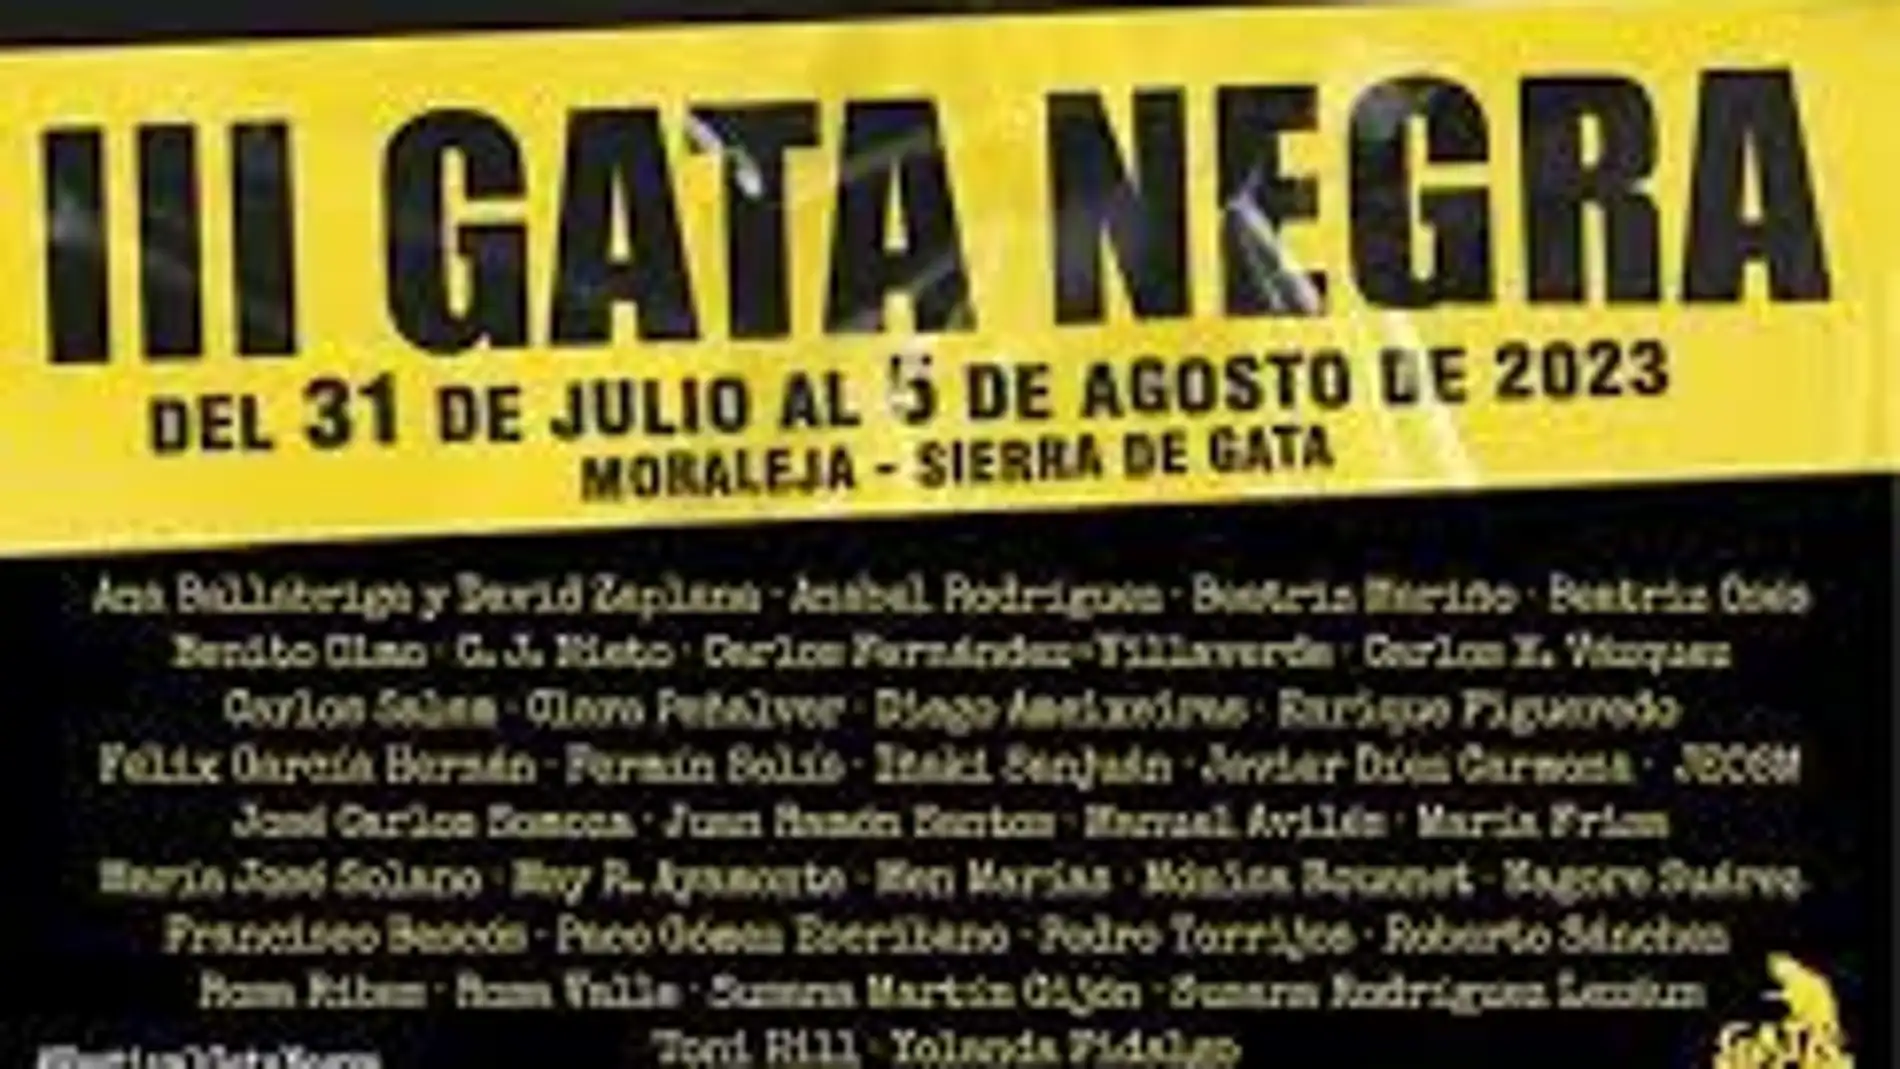 El III Festival de Literatura 'Gata Negra' llegará del 31 de julio al 5 de agosto a Moraleja y Sierra de Gata